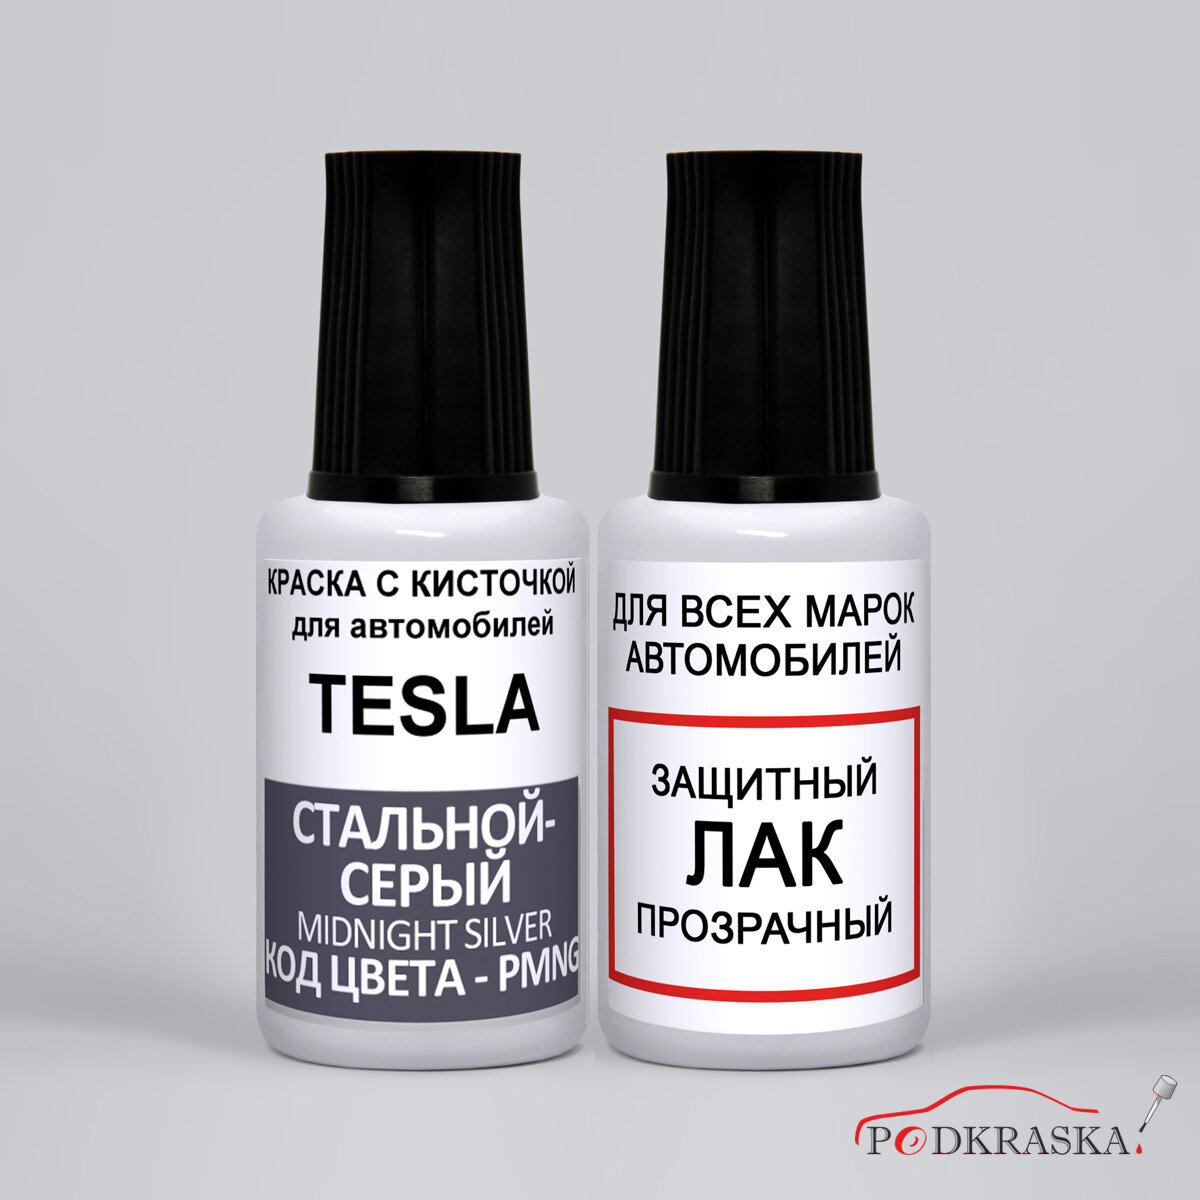 Автоэмаль для Tesla по коду- PMNG Tesla Стальной - серый, Midnight Silver, краска + лак